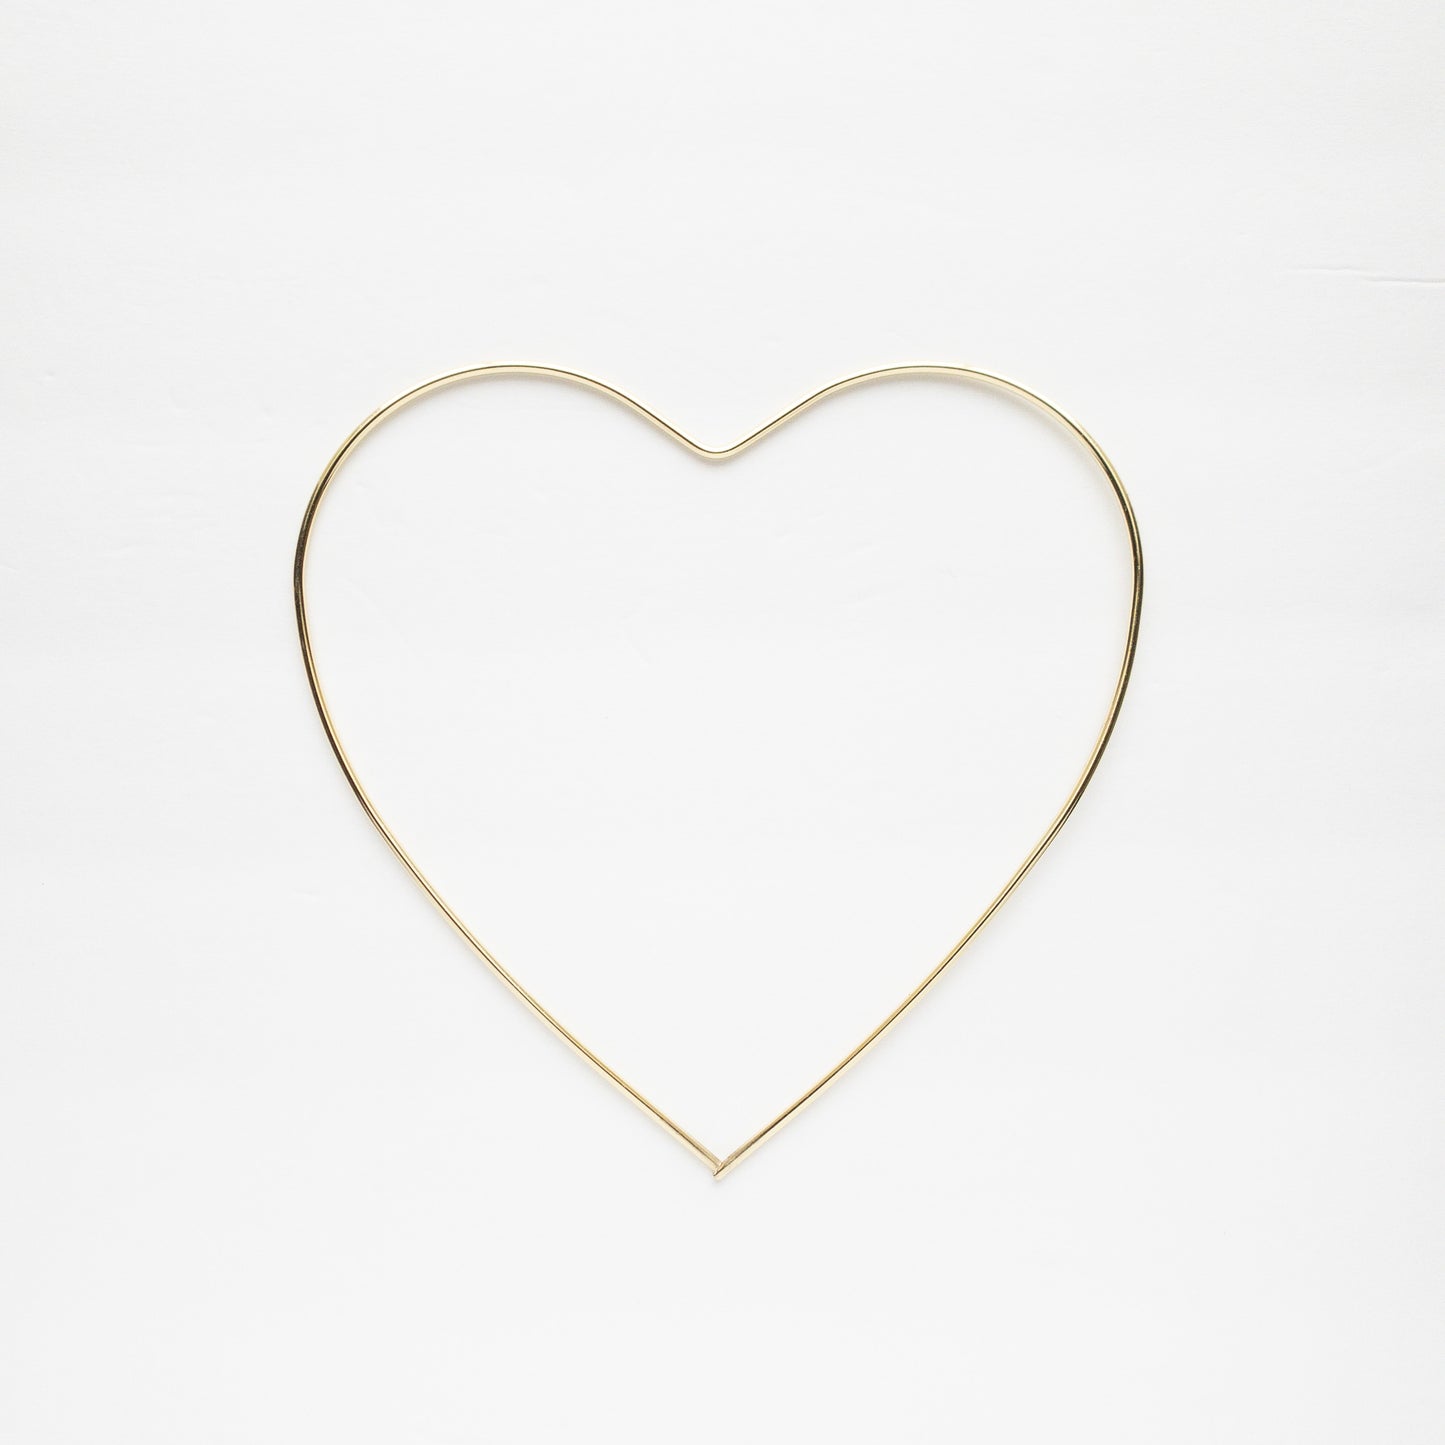 Destash / Gold Metal Heart frame